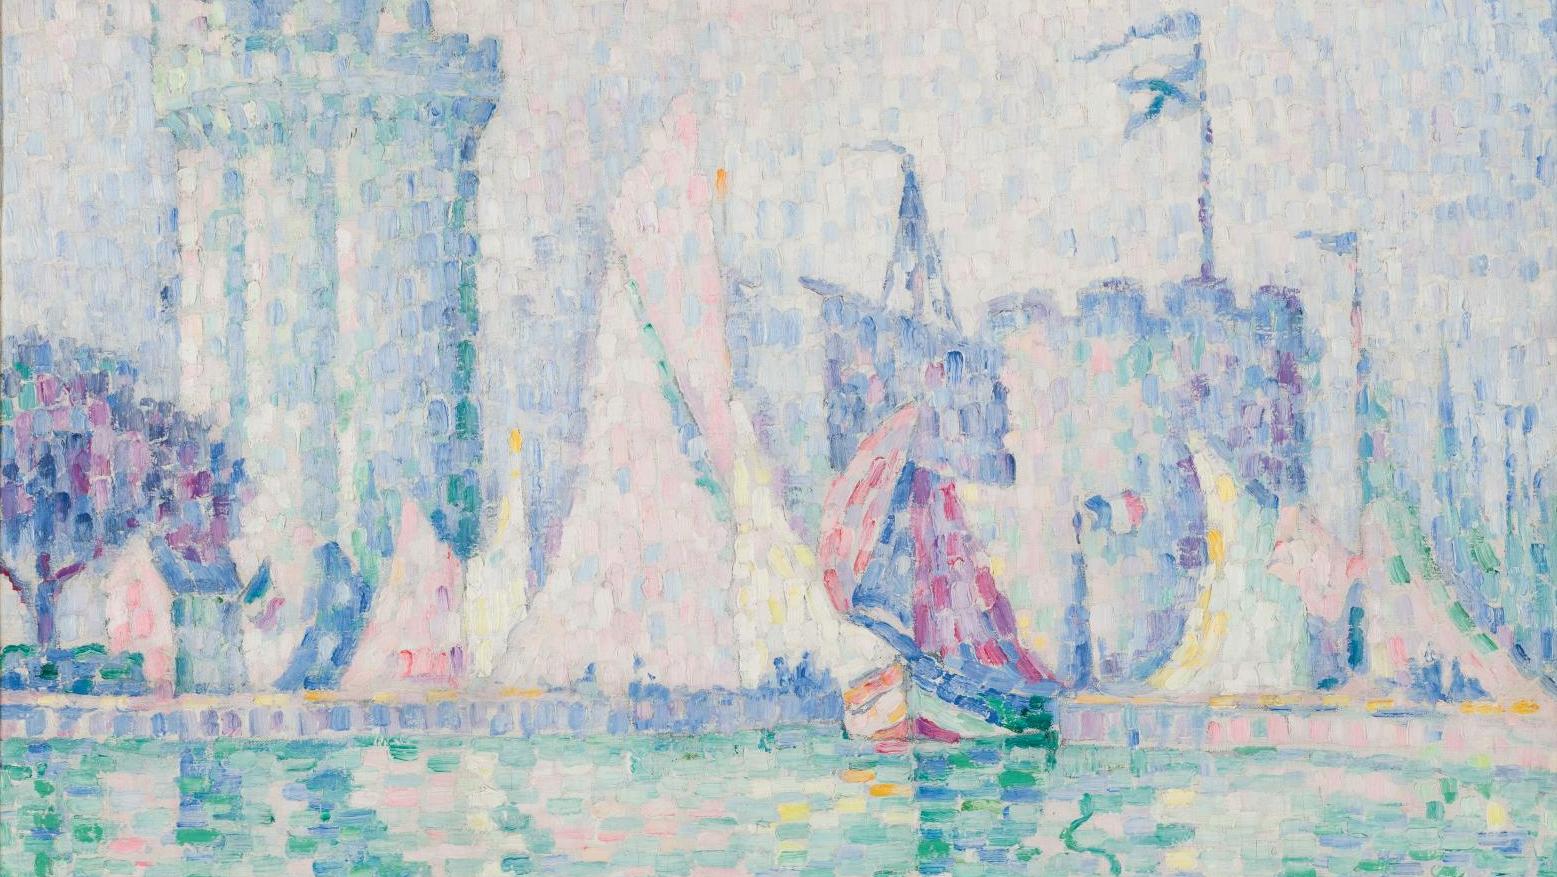 Paul Signac (1863-1935), Le Port de La Rochelle, 1915, huile sur toile, (détail).... Un voleur d’art ukrainien condamné pour avoir dérobé un tableau de Signac